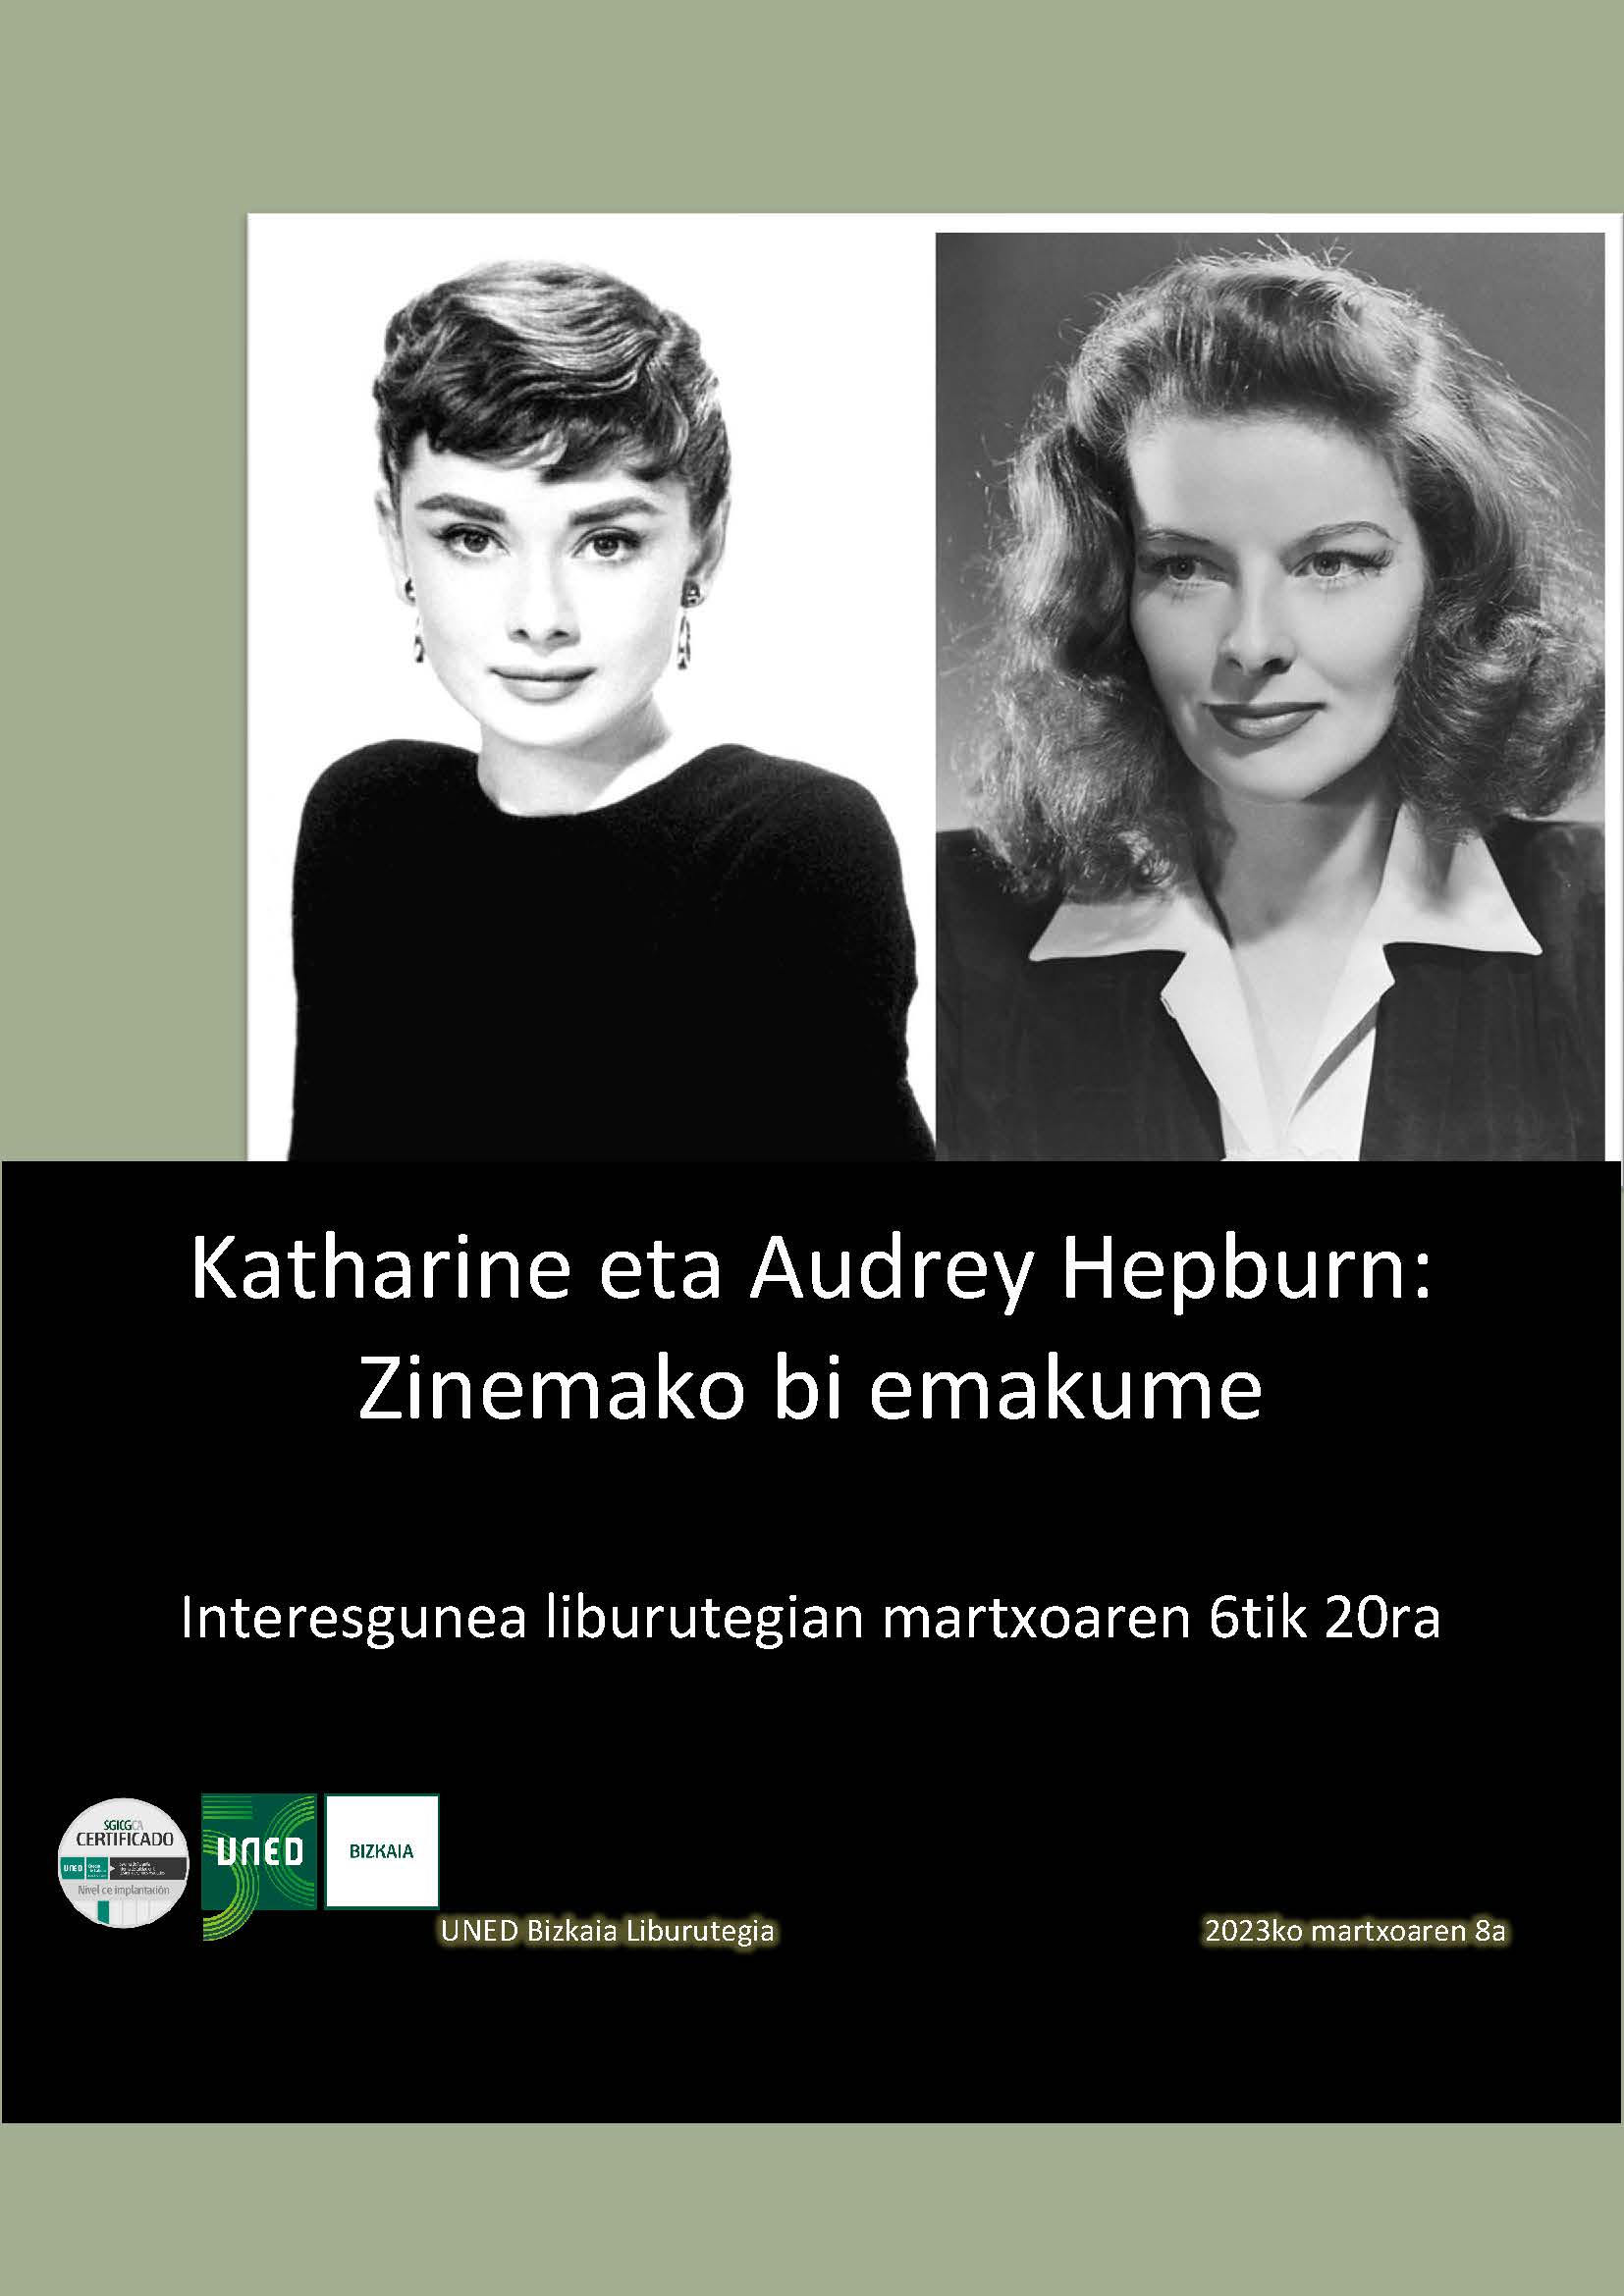 Katharine eta Audrey Hepburni buruzko txostenaren irudia